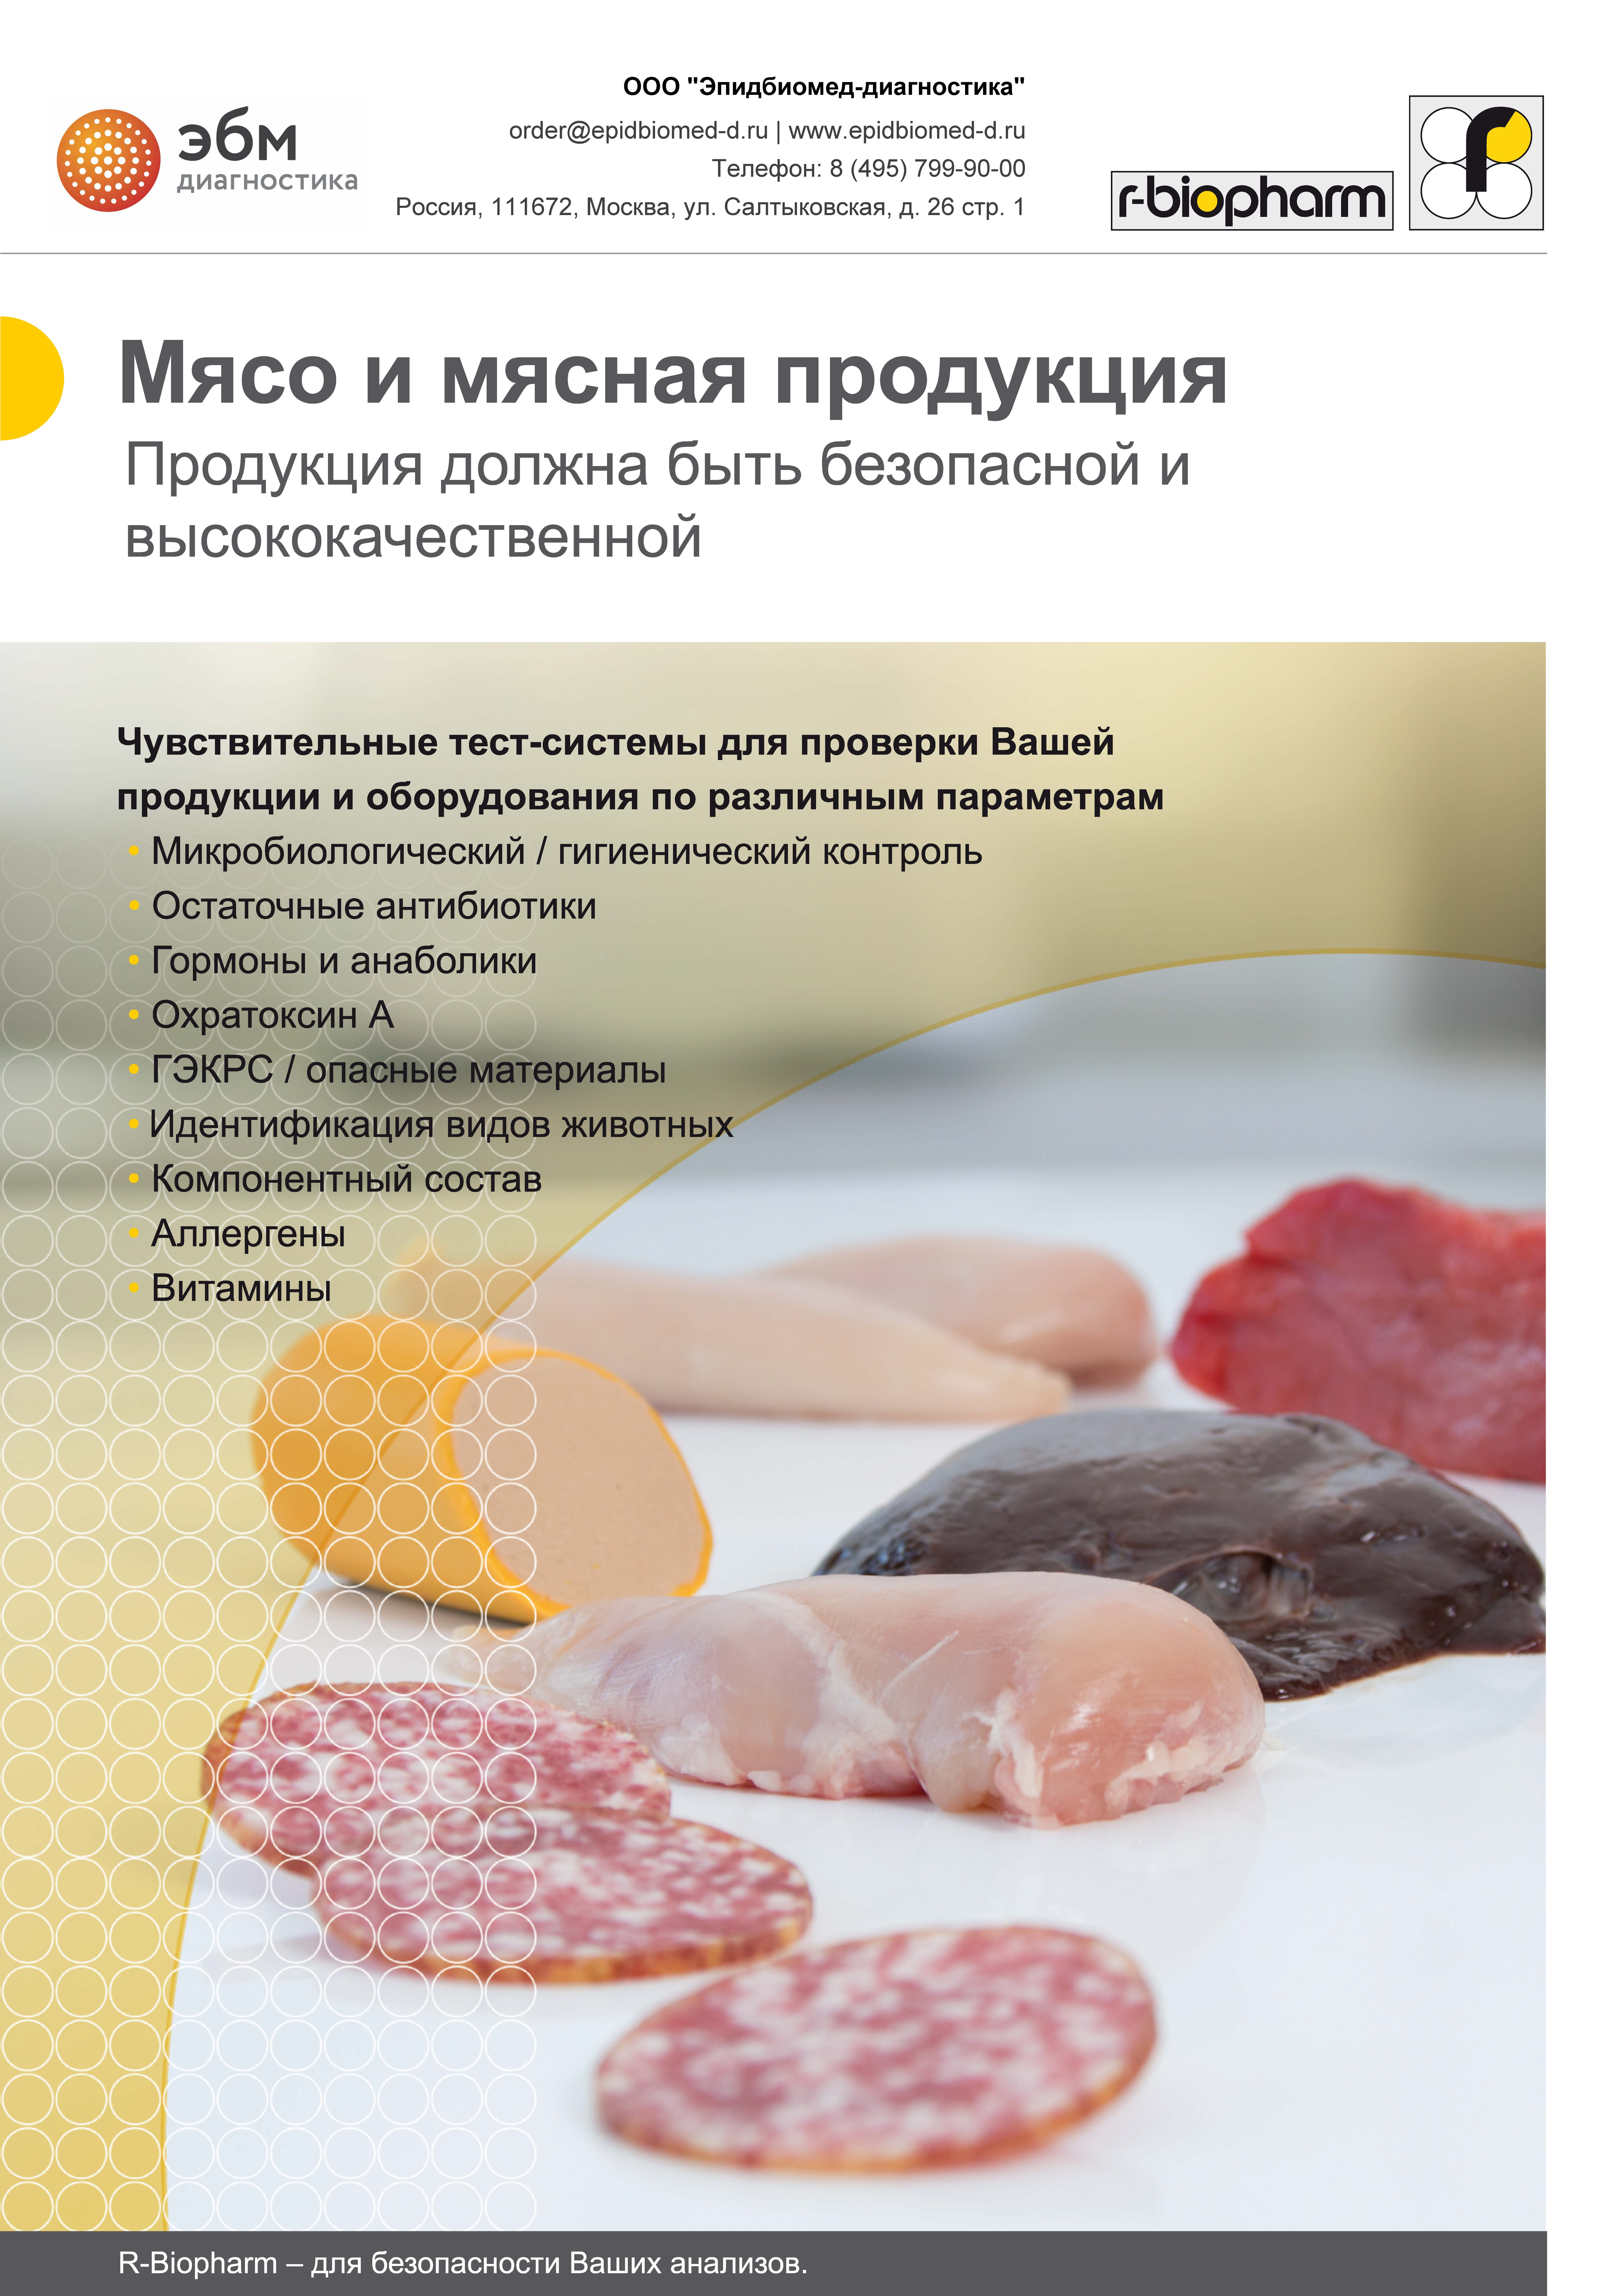 Тест-системы для анализа мясной продукции